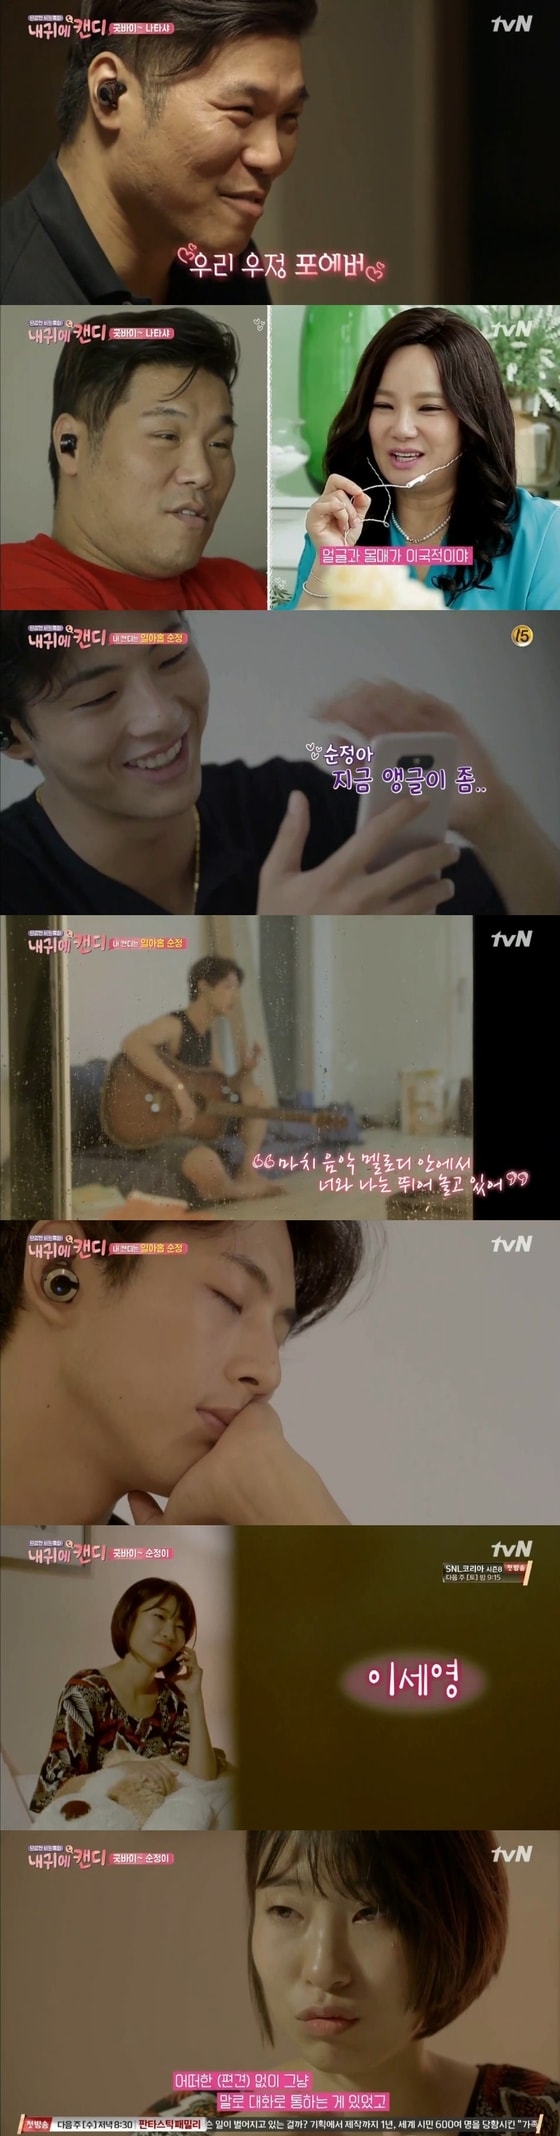 서장훈과 지수의 통화 상대가 공개됐다. © News1star / tvN '내 귀에 캔디' 캡처